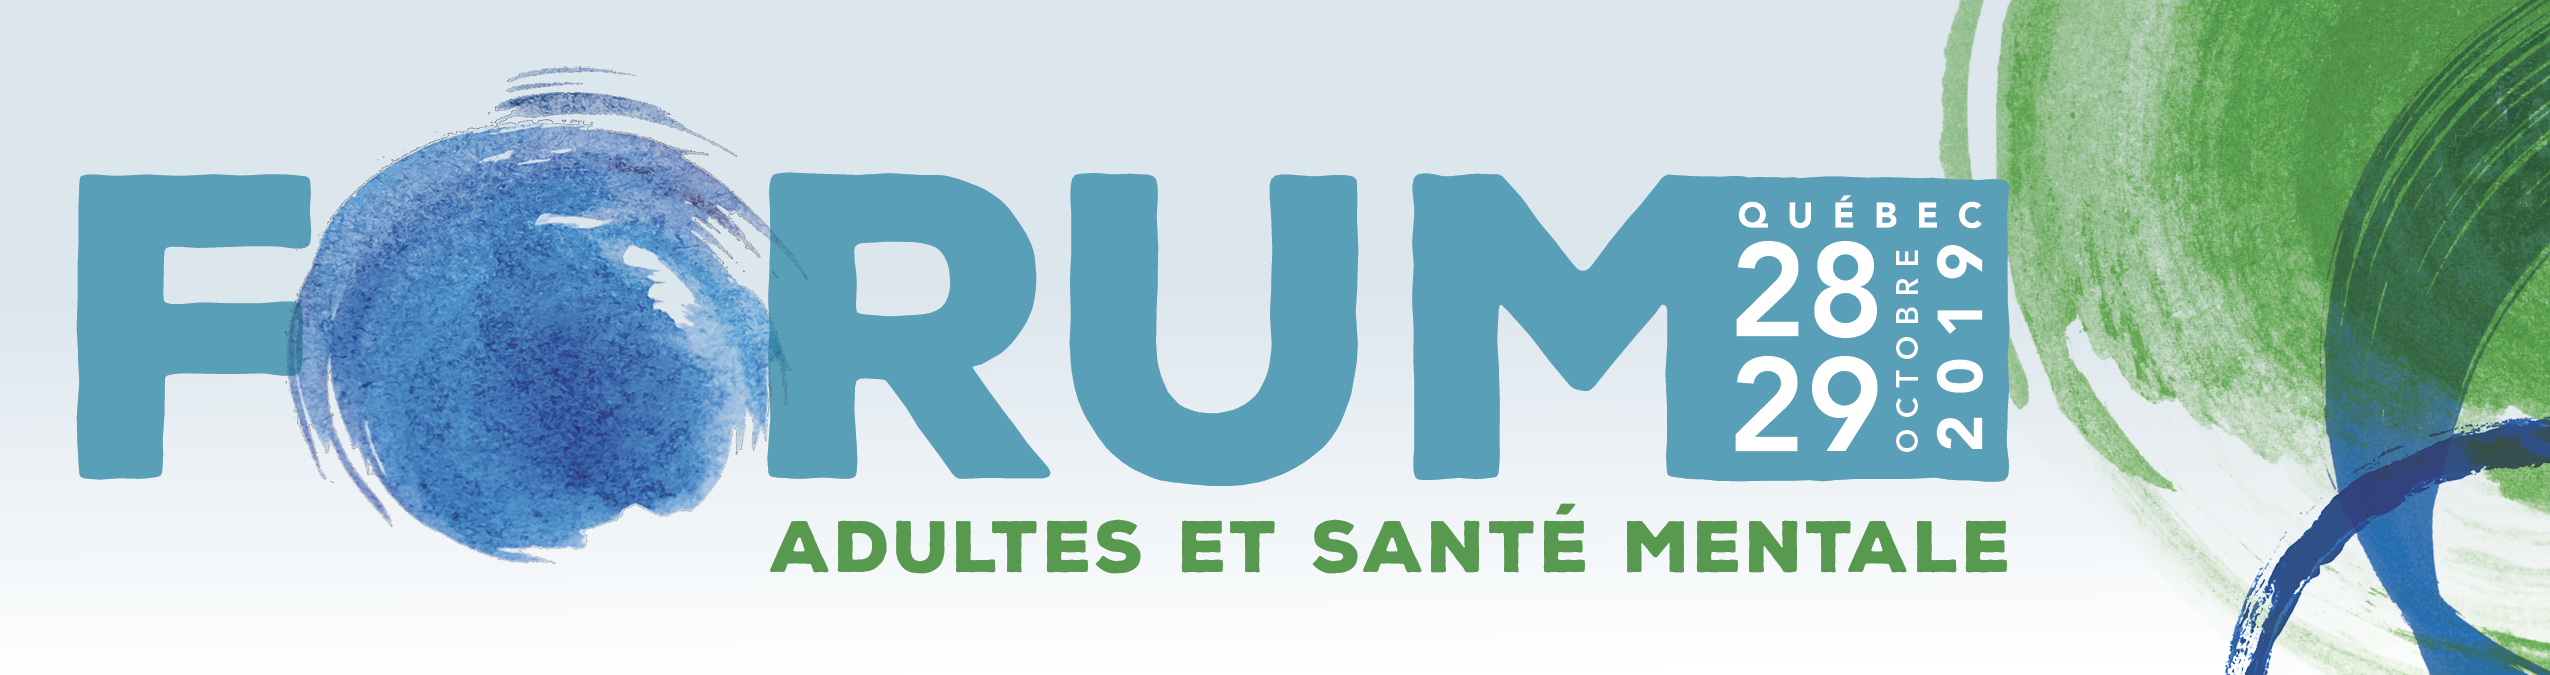 Forum Adultes et santé mentale. Québec, 28 et 29 octobre 2019.